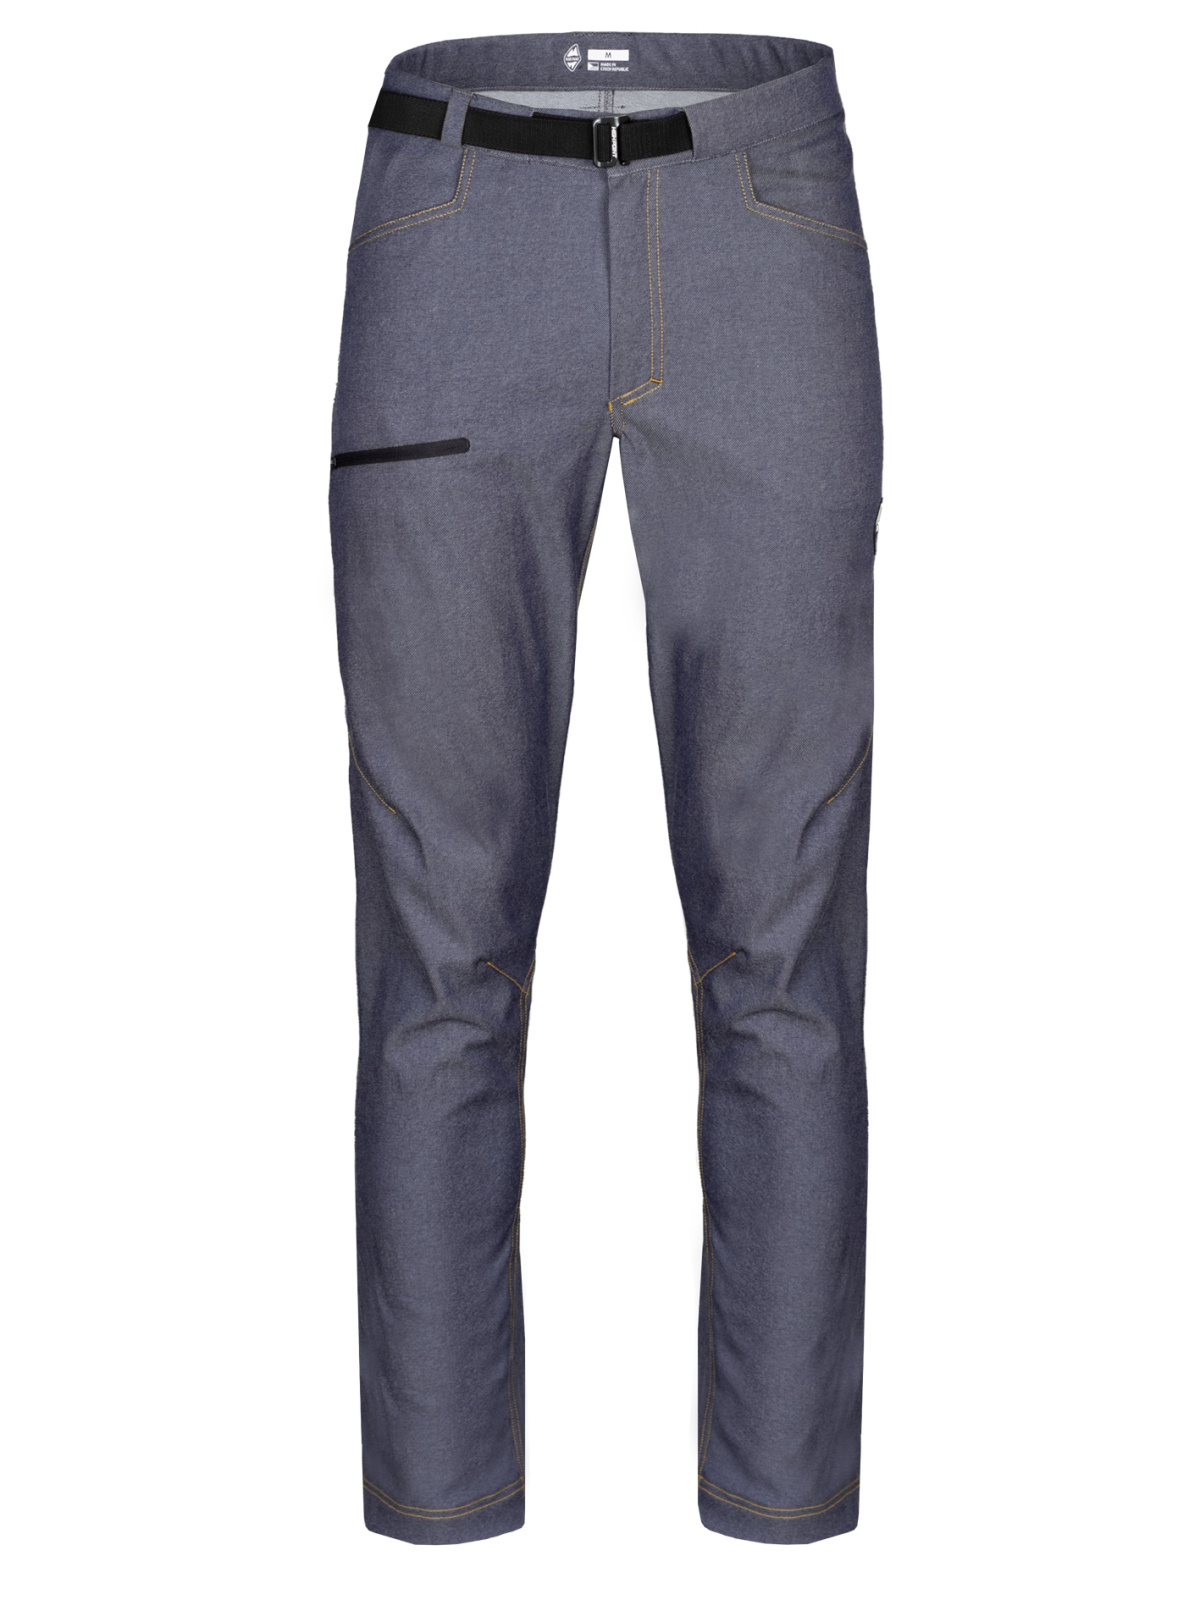 Levně High point Gravity Pants XL-Short, Denim Blue Pánské outdoor kalhoty